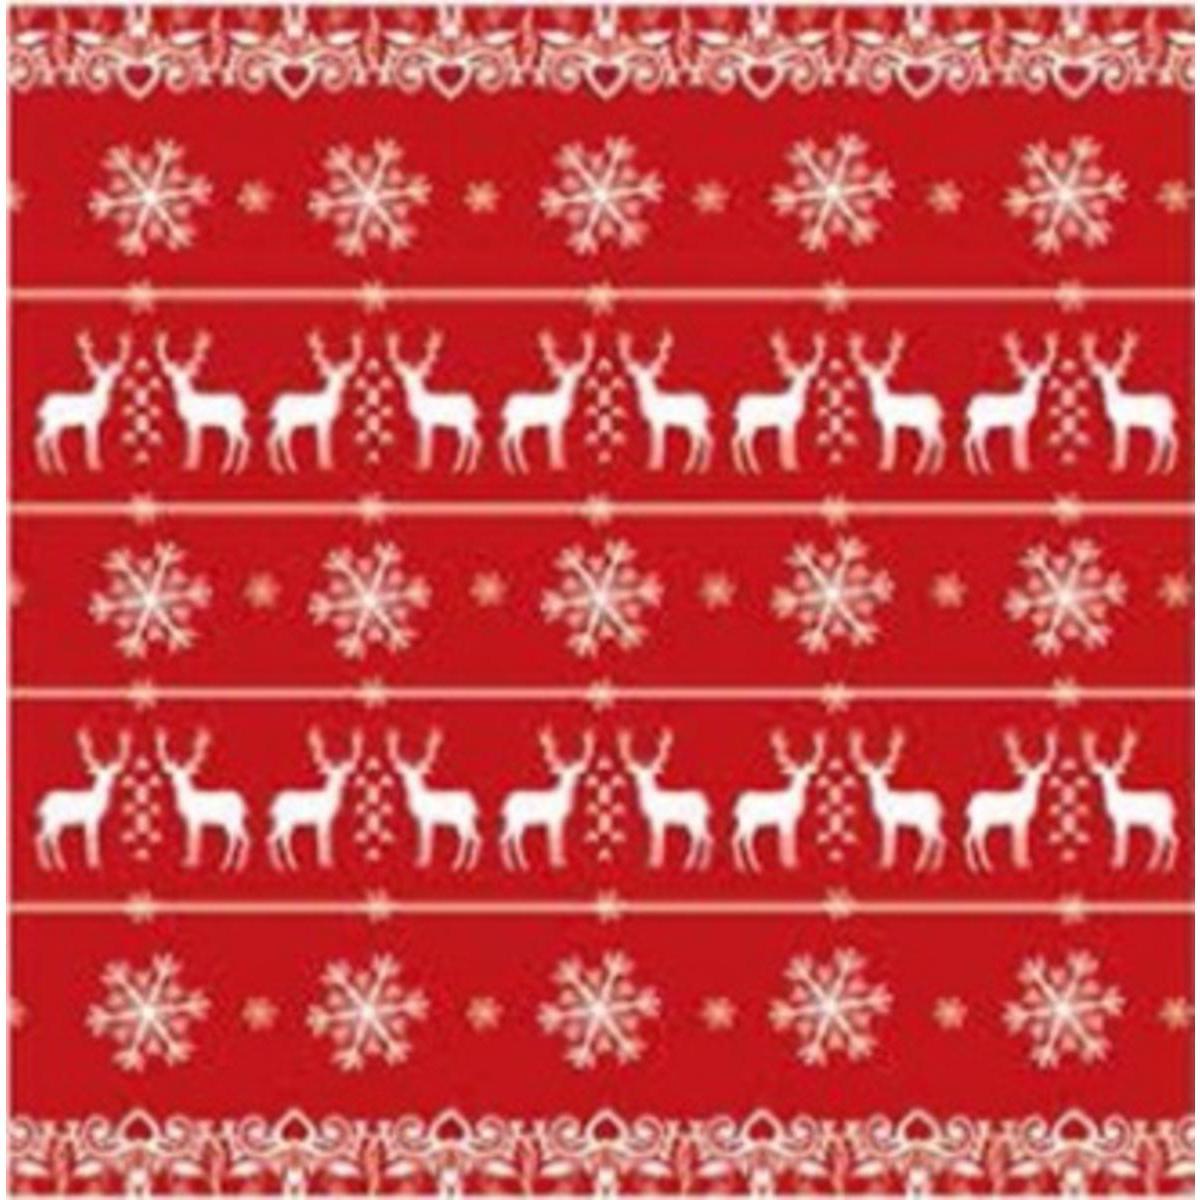 Lot de 20 serviettes imprimées rennes - Papier - 33 x 33 cm - Blanc et rouge